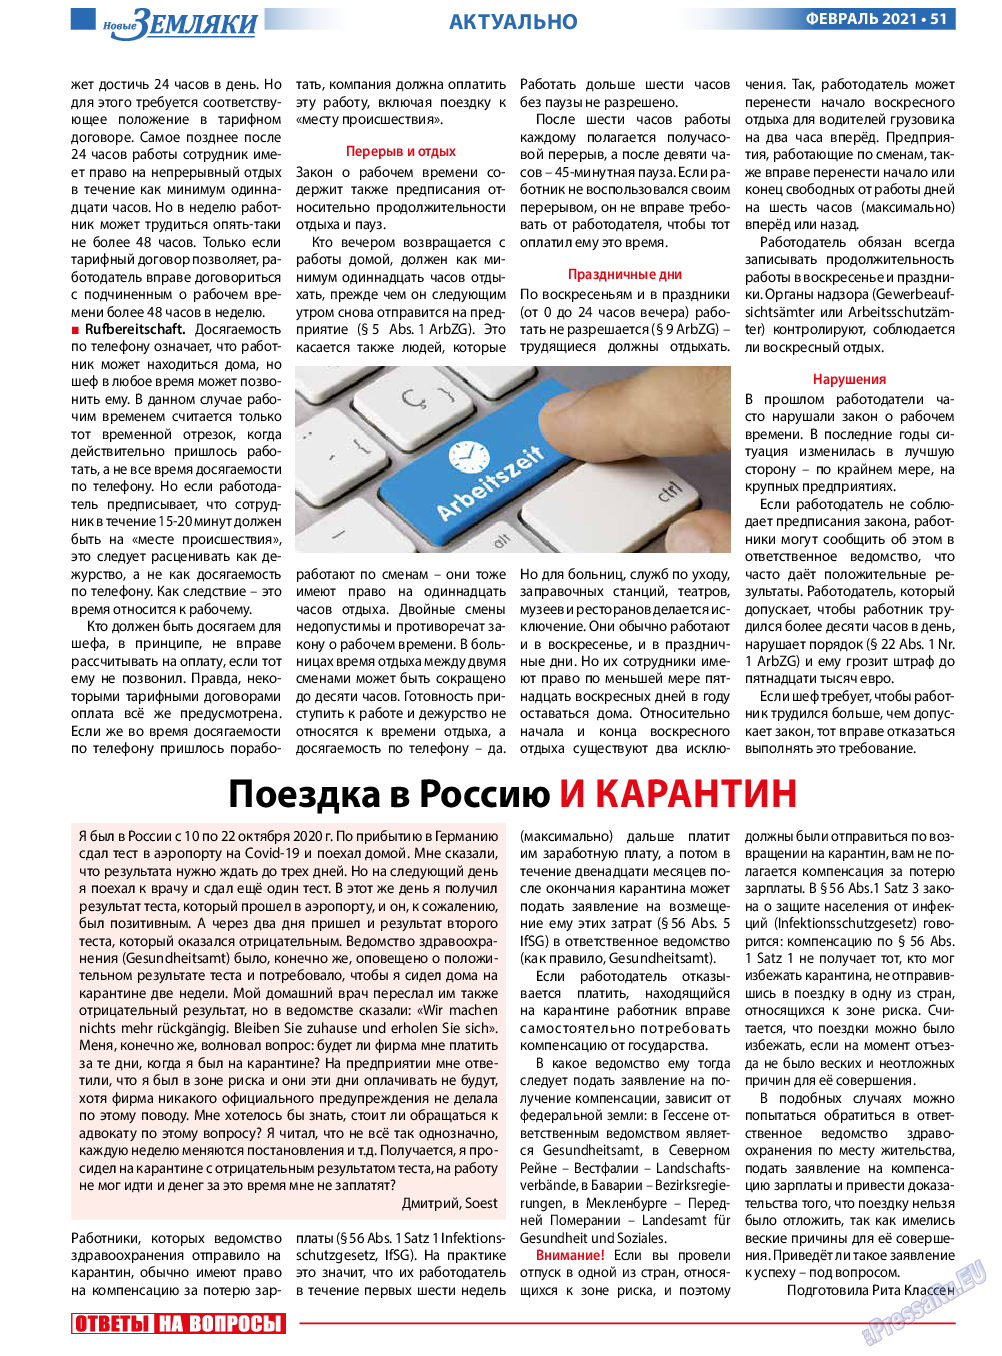 Новые Земляки, газета. 2021 №2 стр.51